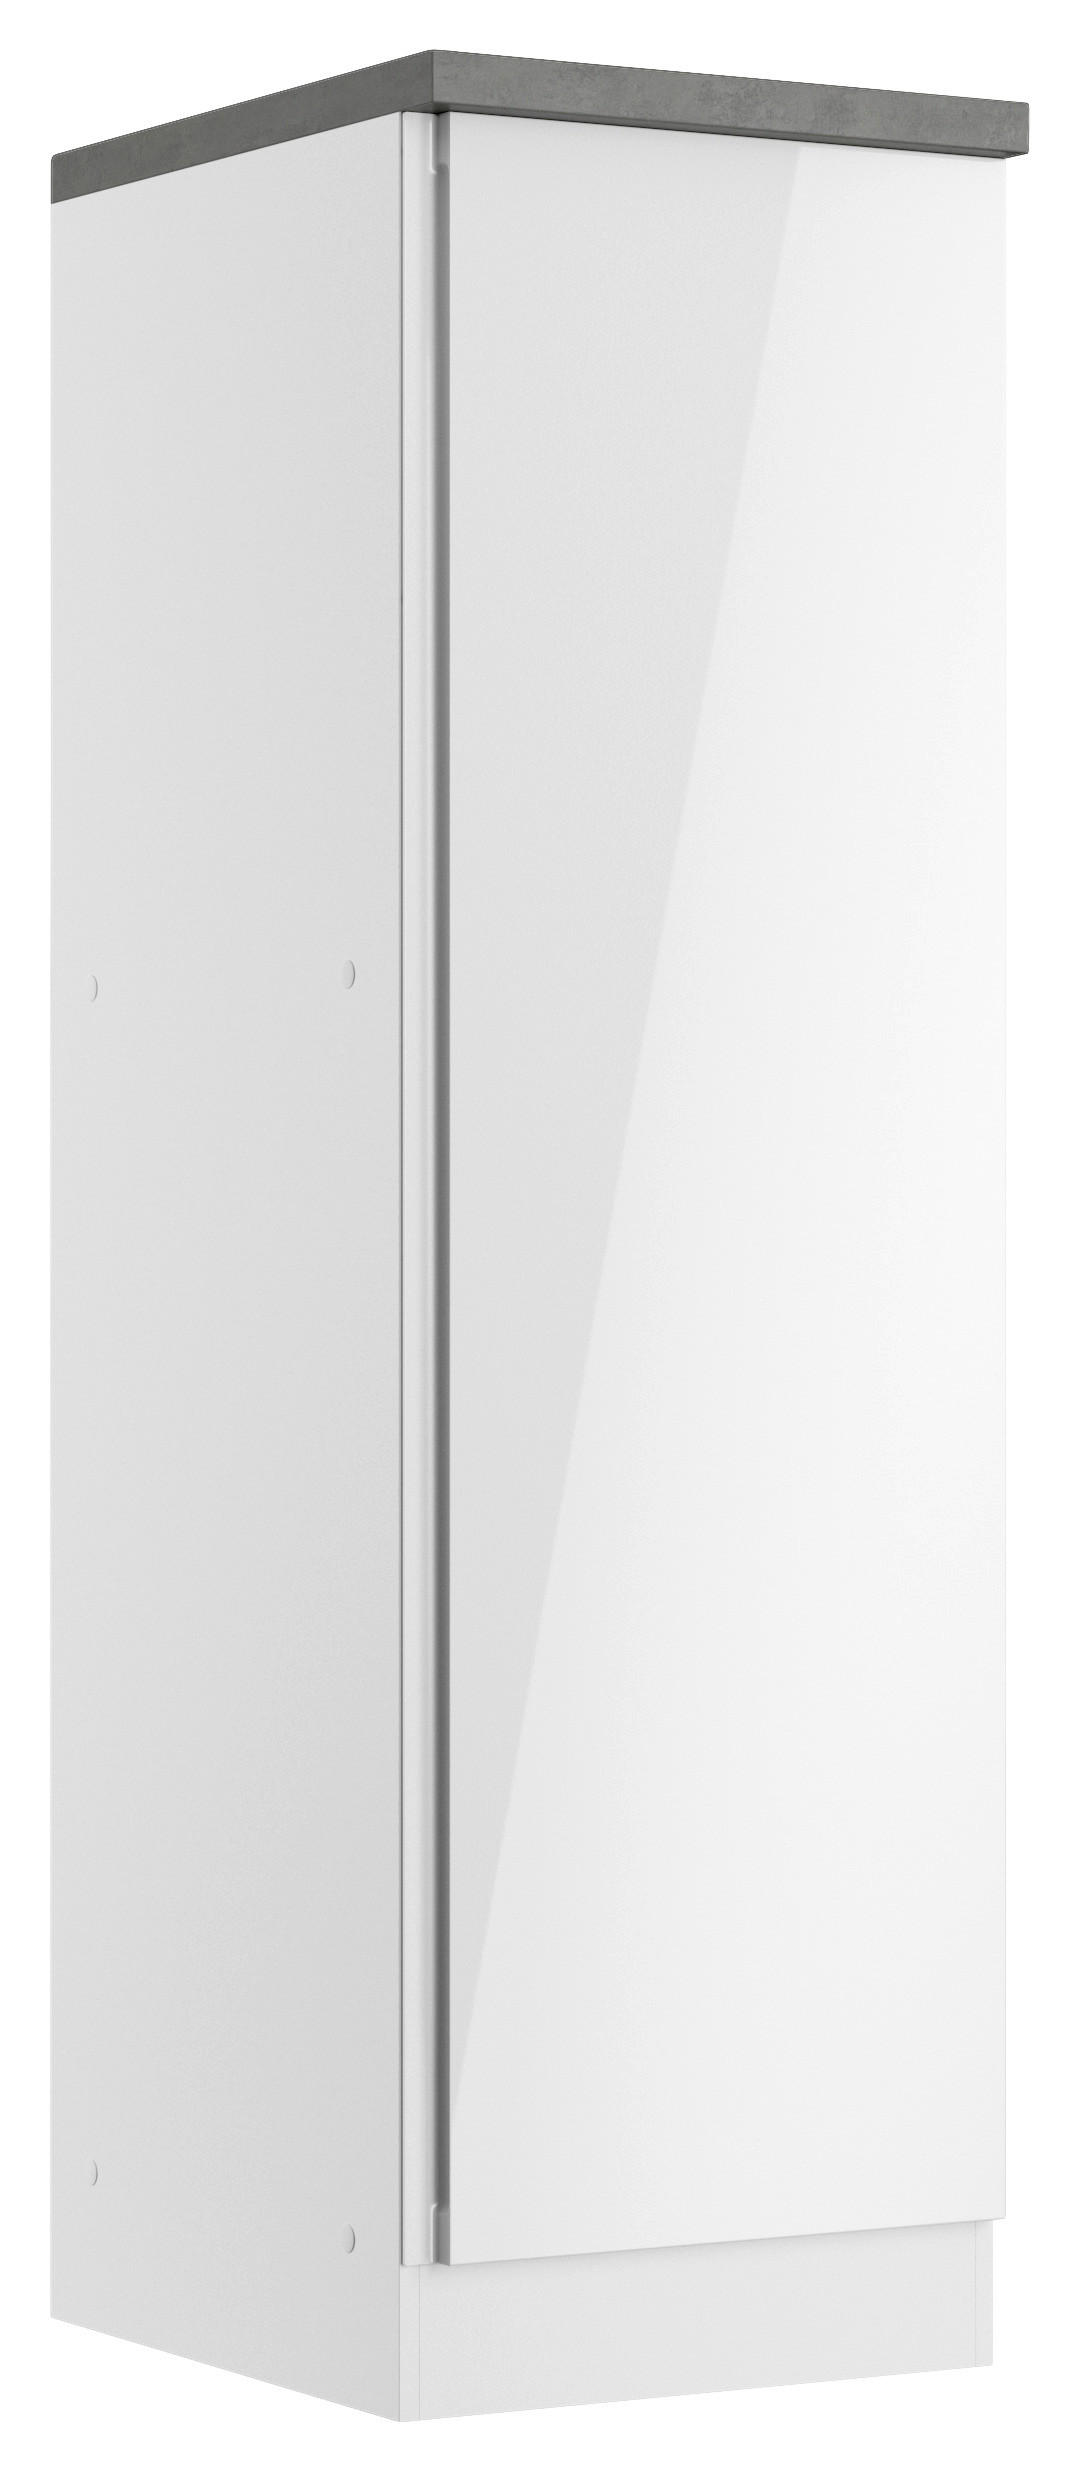 APOTHEKERSCHRANK 50/166/60 cm  in Grau, Weiß, Weiß Hochglanz  - Weiß Hochglanz/Weiß, LIFESTYLE, Holzwerkstoff (50/166/60cm) - Held